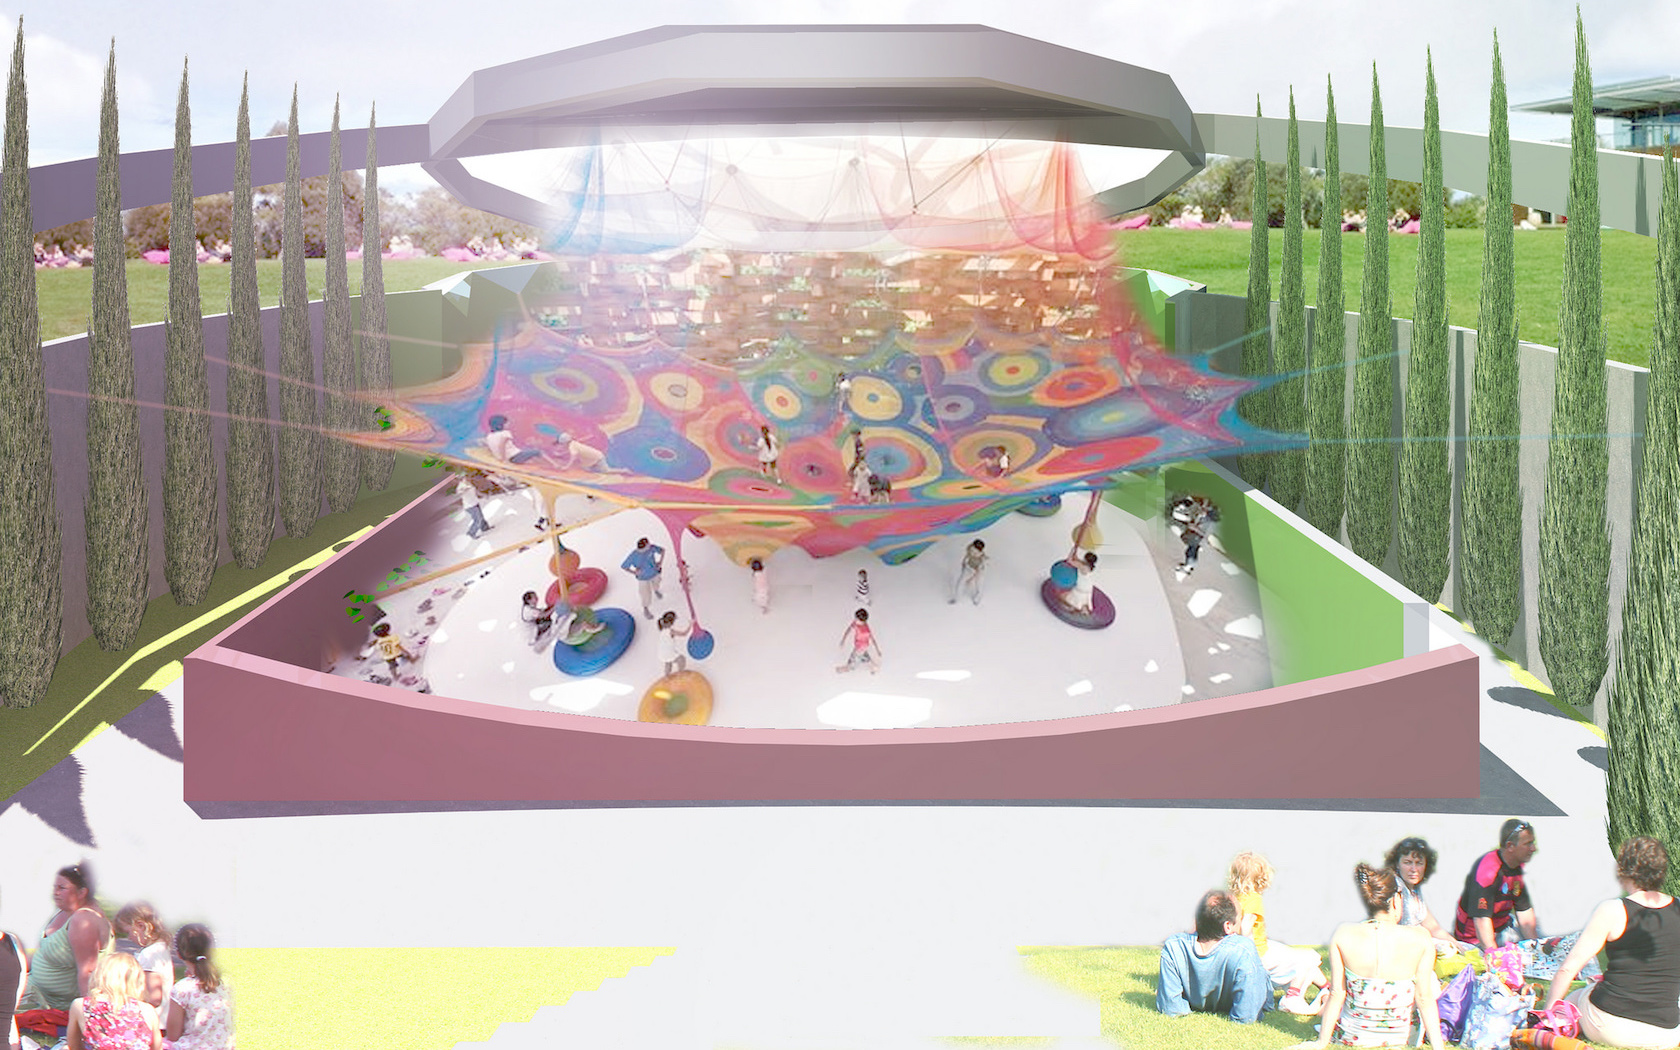 MONA children's playground rendering